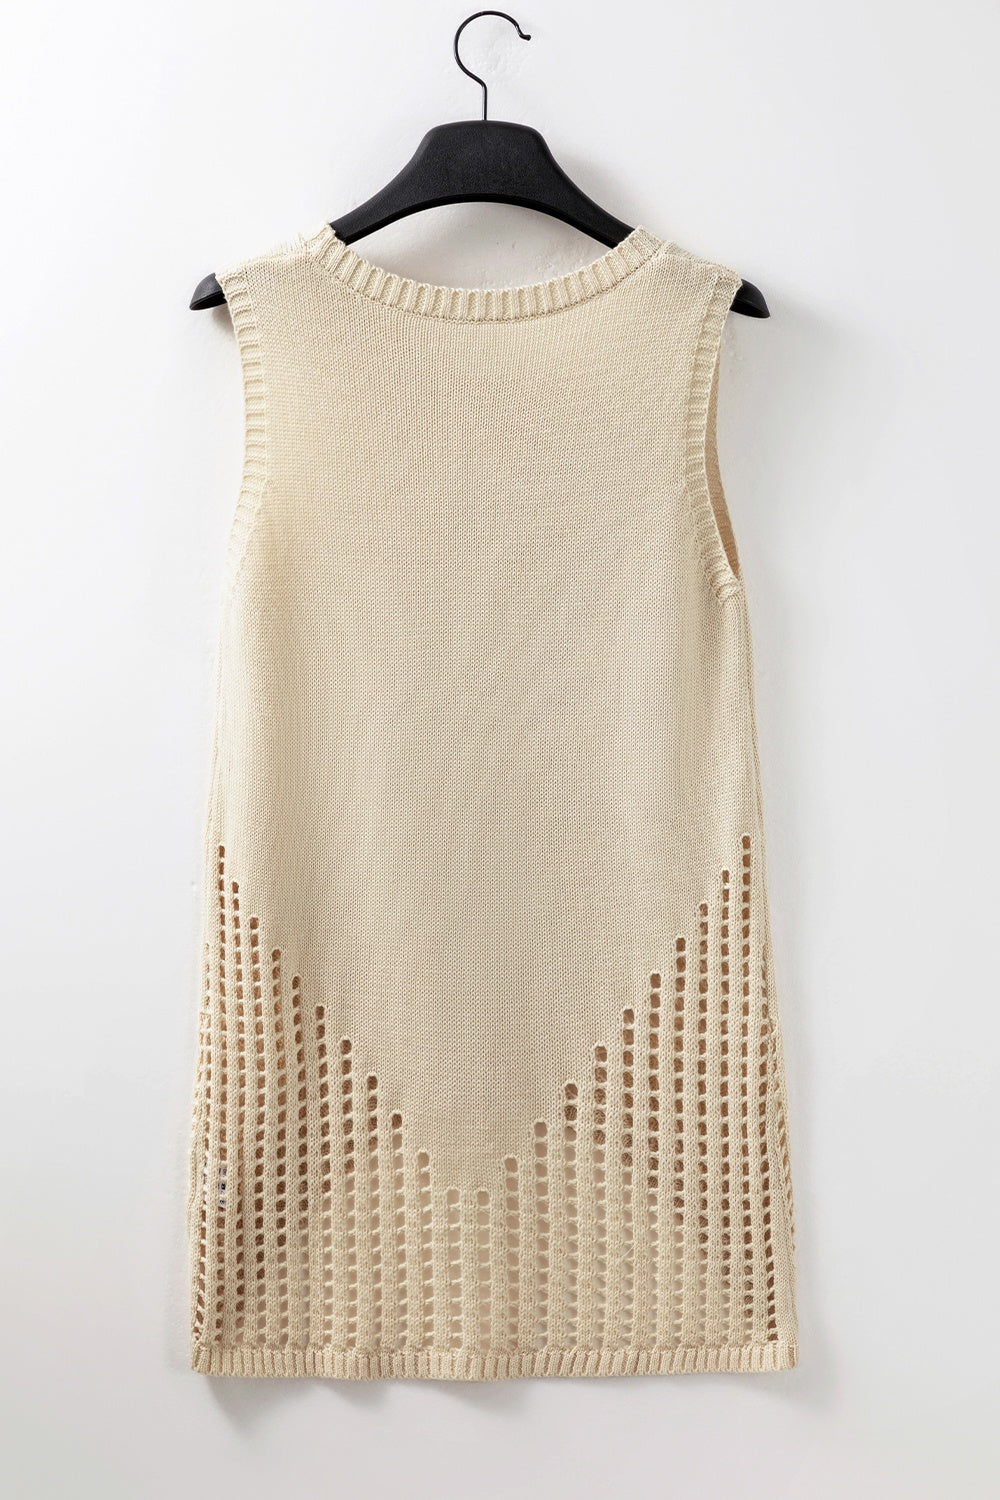 TEEK - Ivory Open Dot Drip Knit Vest TOPS TEEK Trend   